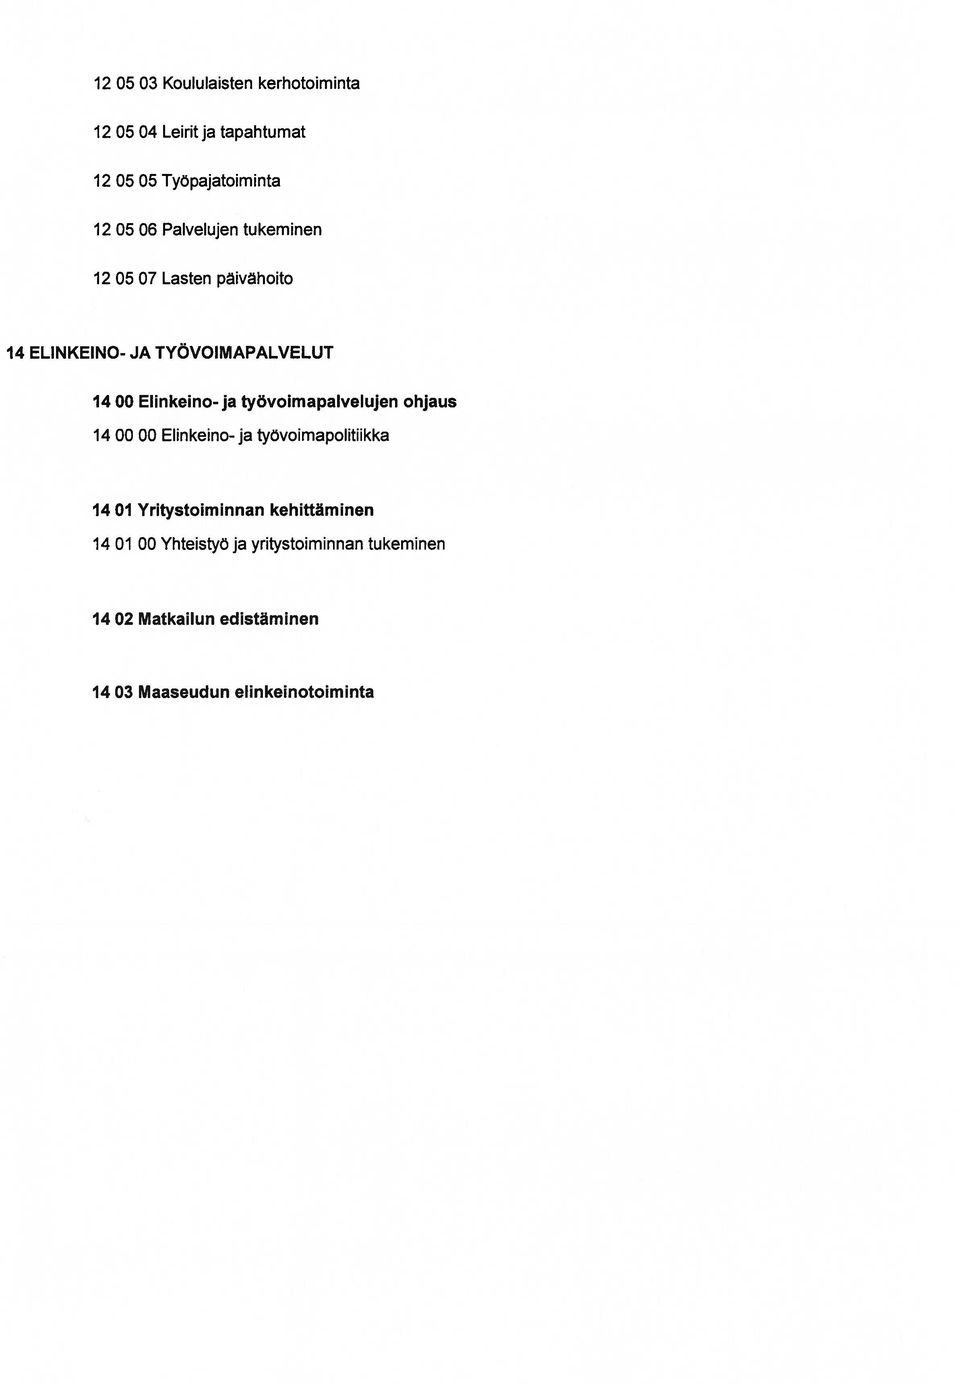 työvoimapalvelujen ohjaus 14 00 00 Elinkeino- ja työvoimapolitiikka 14 01 Yritystoiminnan kehittäminen